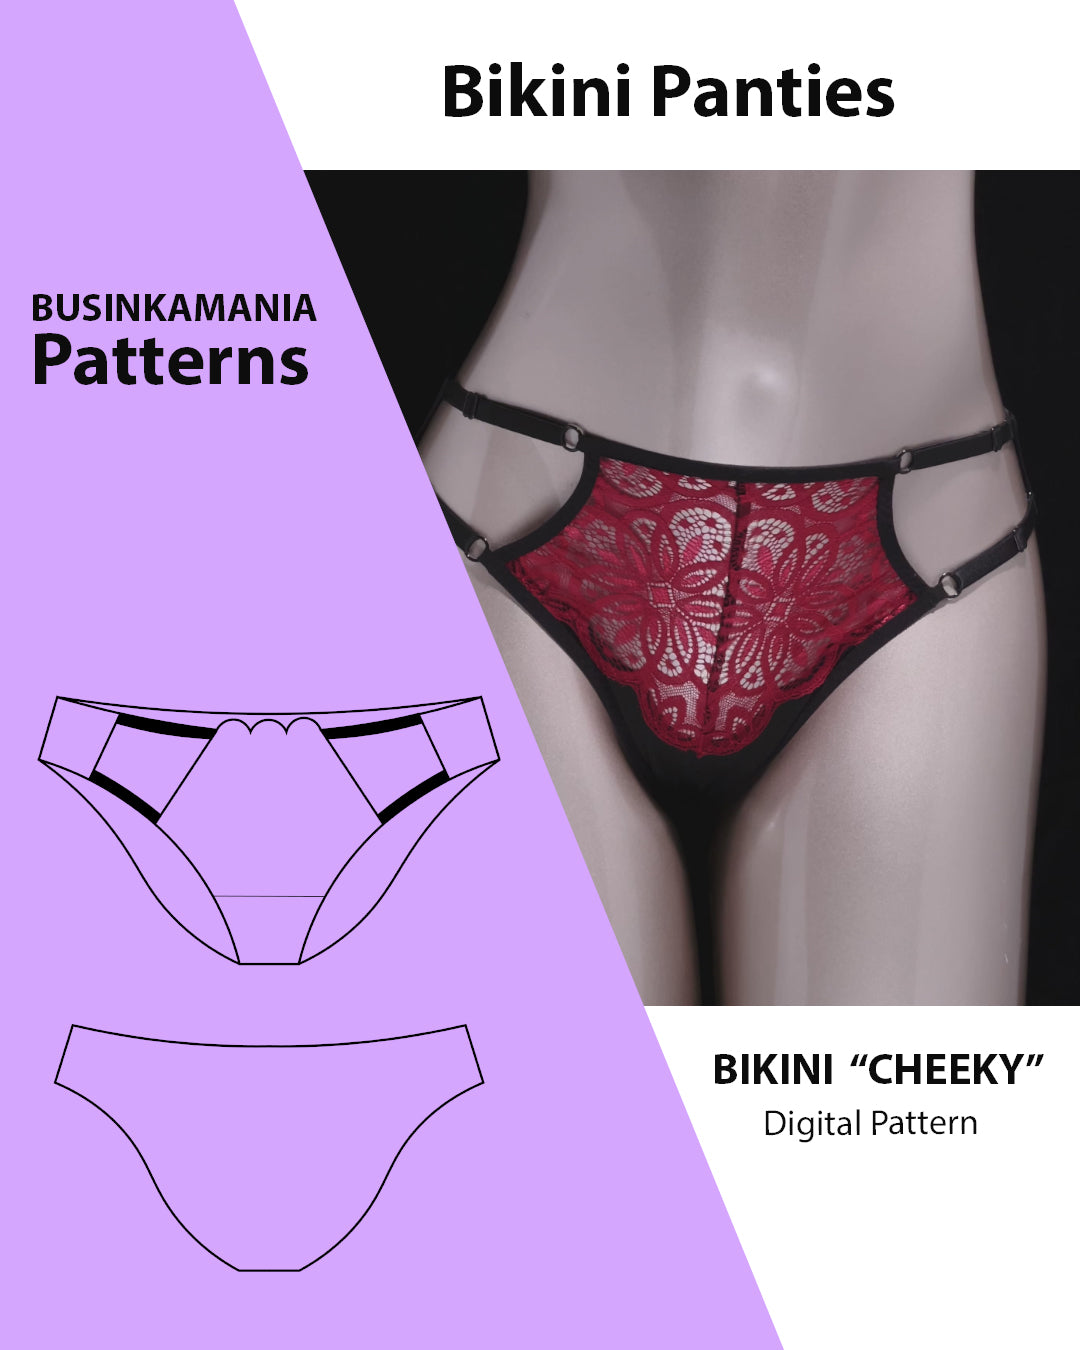 Bikini Cheeky Sewing Pattern